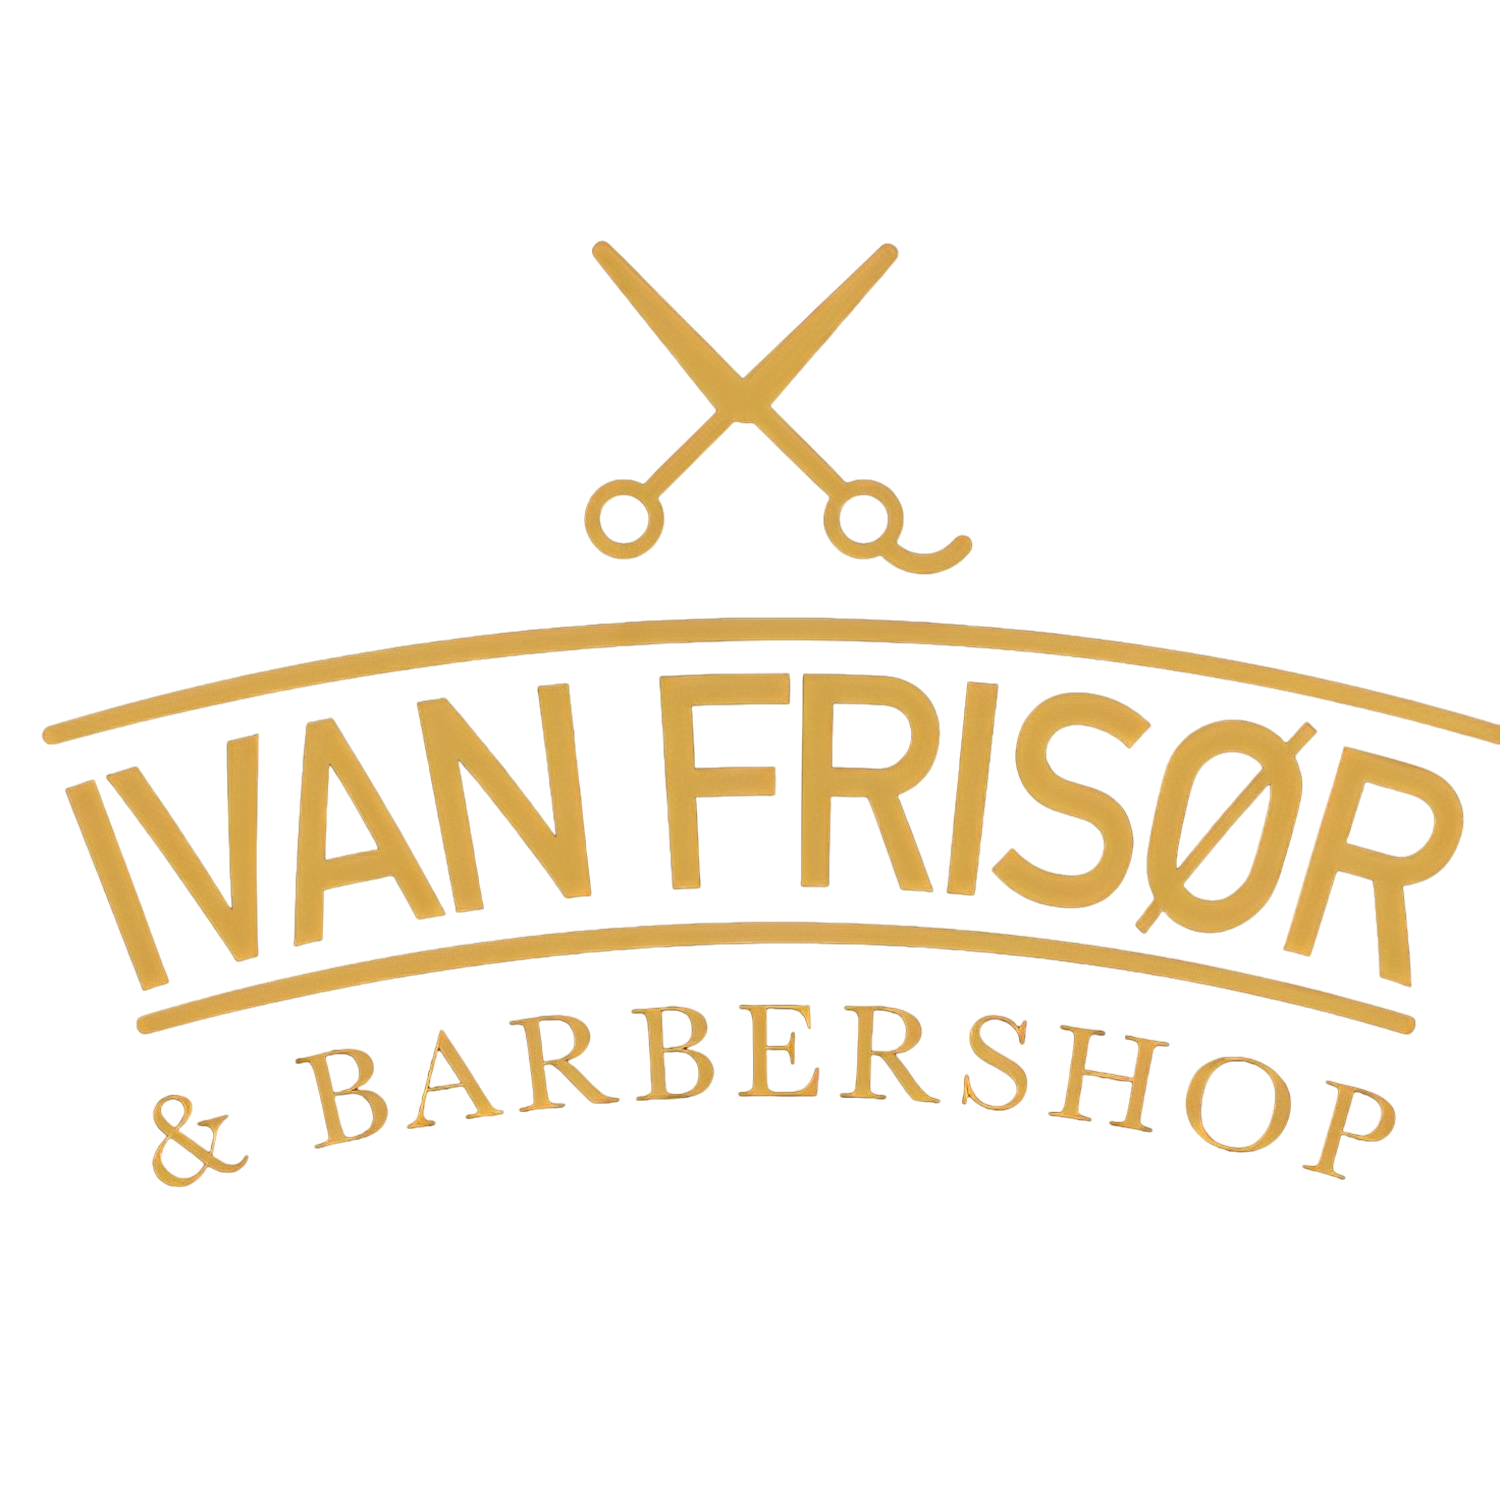 Ivan Frisør & Barbershop